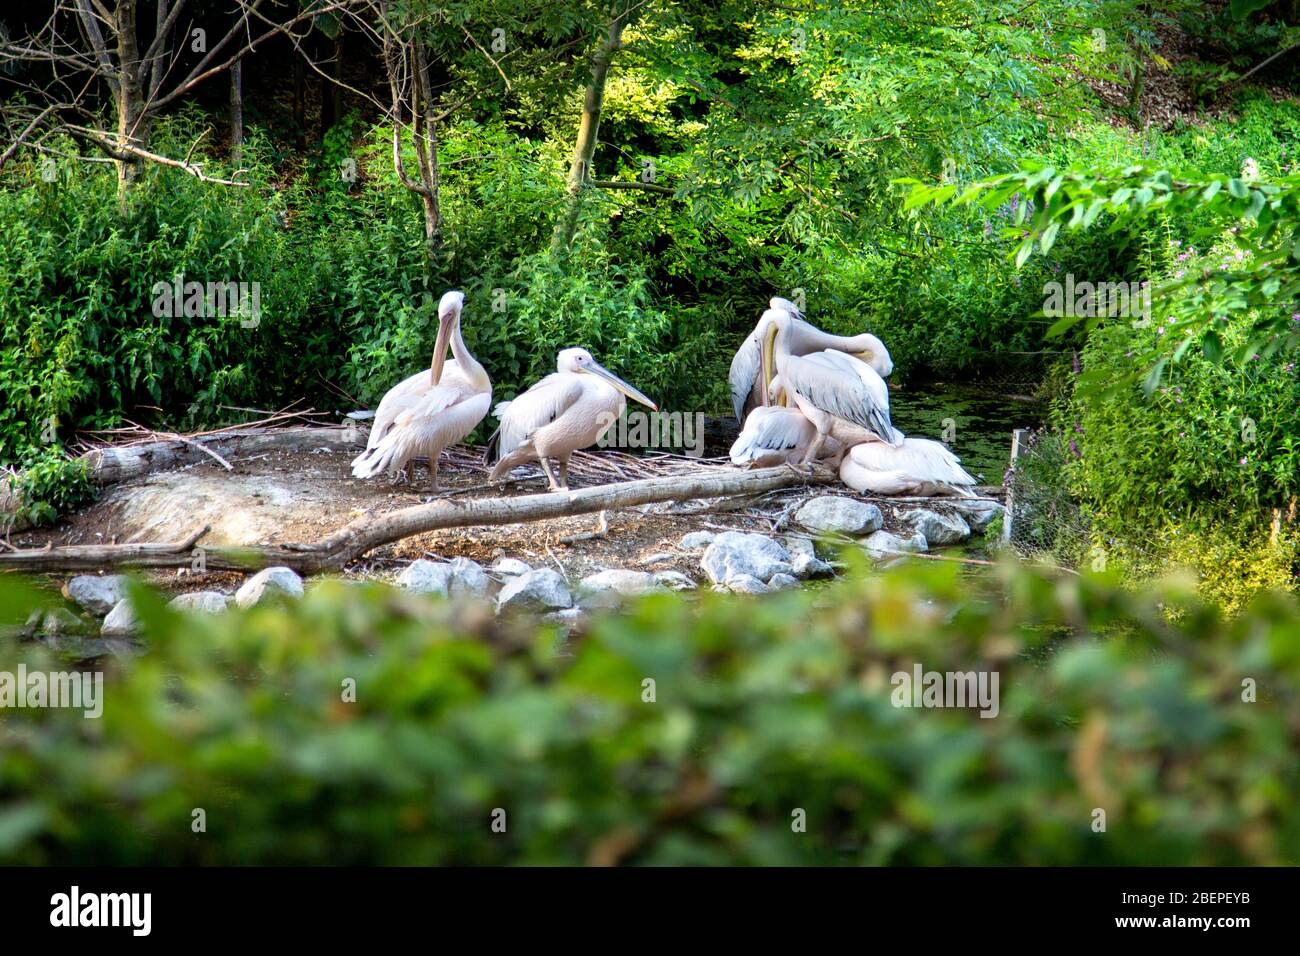 Pelicans at Parc de la Citadelle (Citadel Park), Lille, France Stock Photo